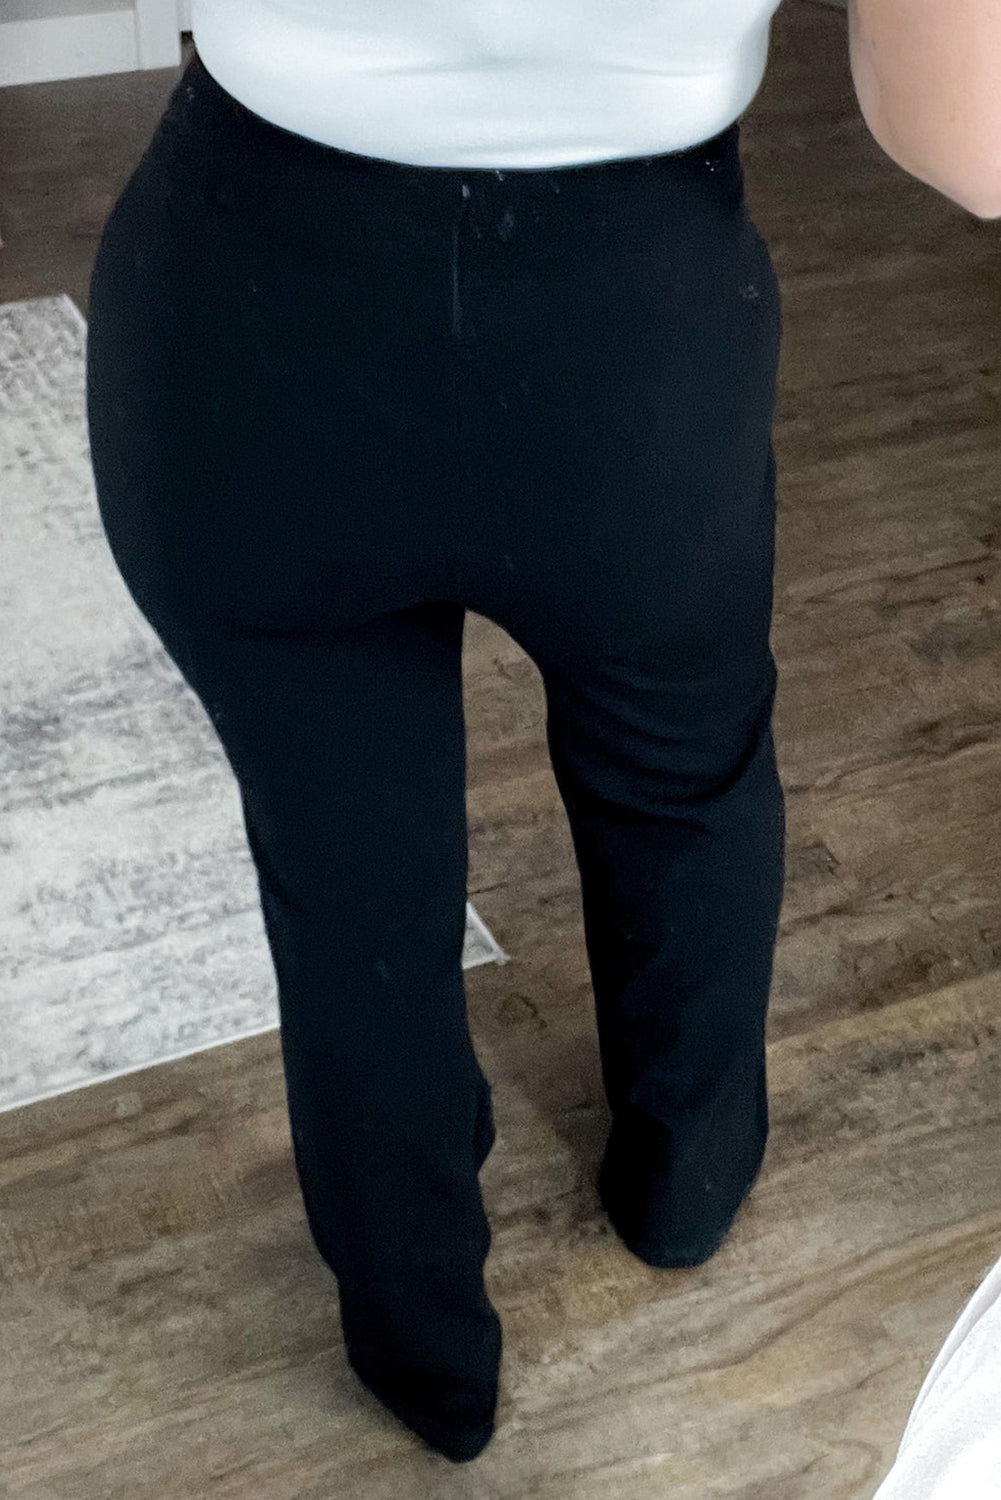 Pantalon noir à coutures apparentes, jambe droite, grande taille